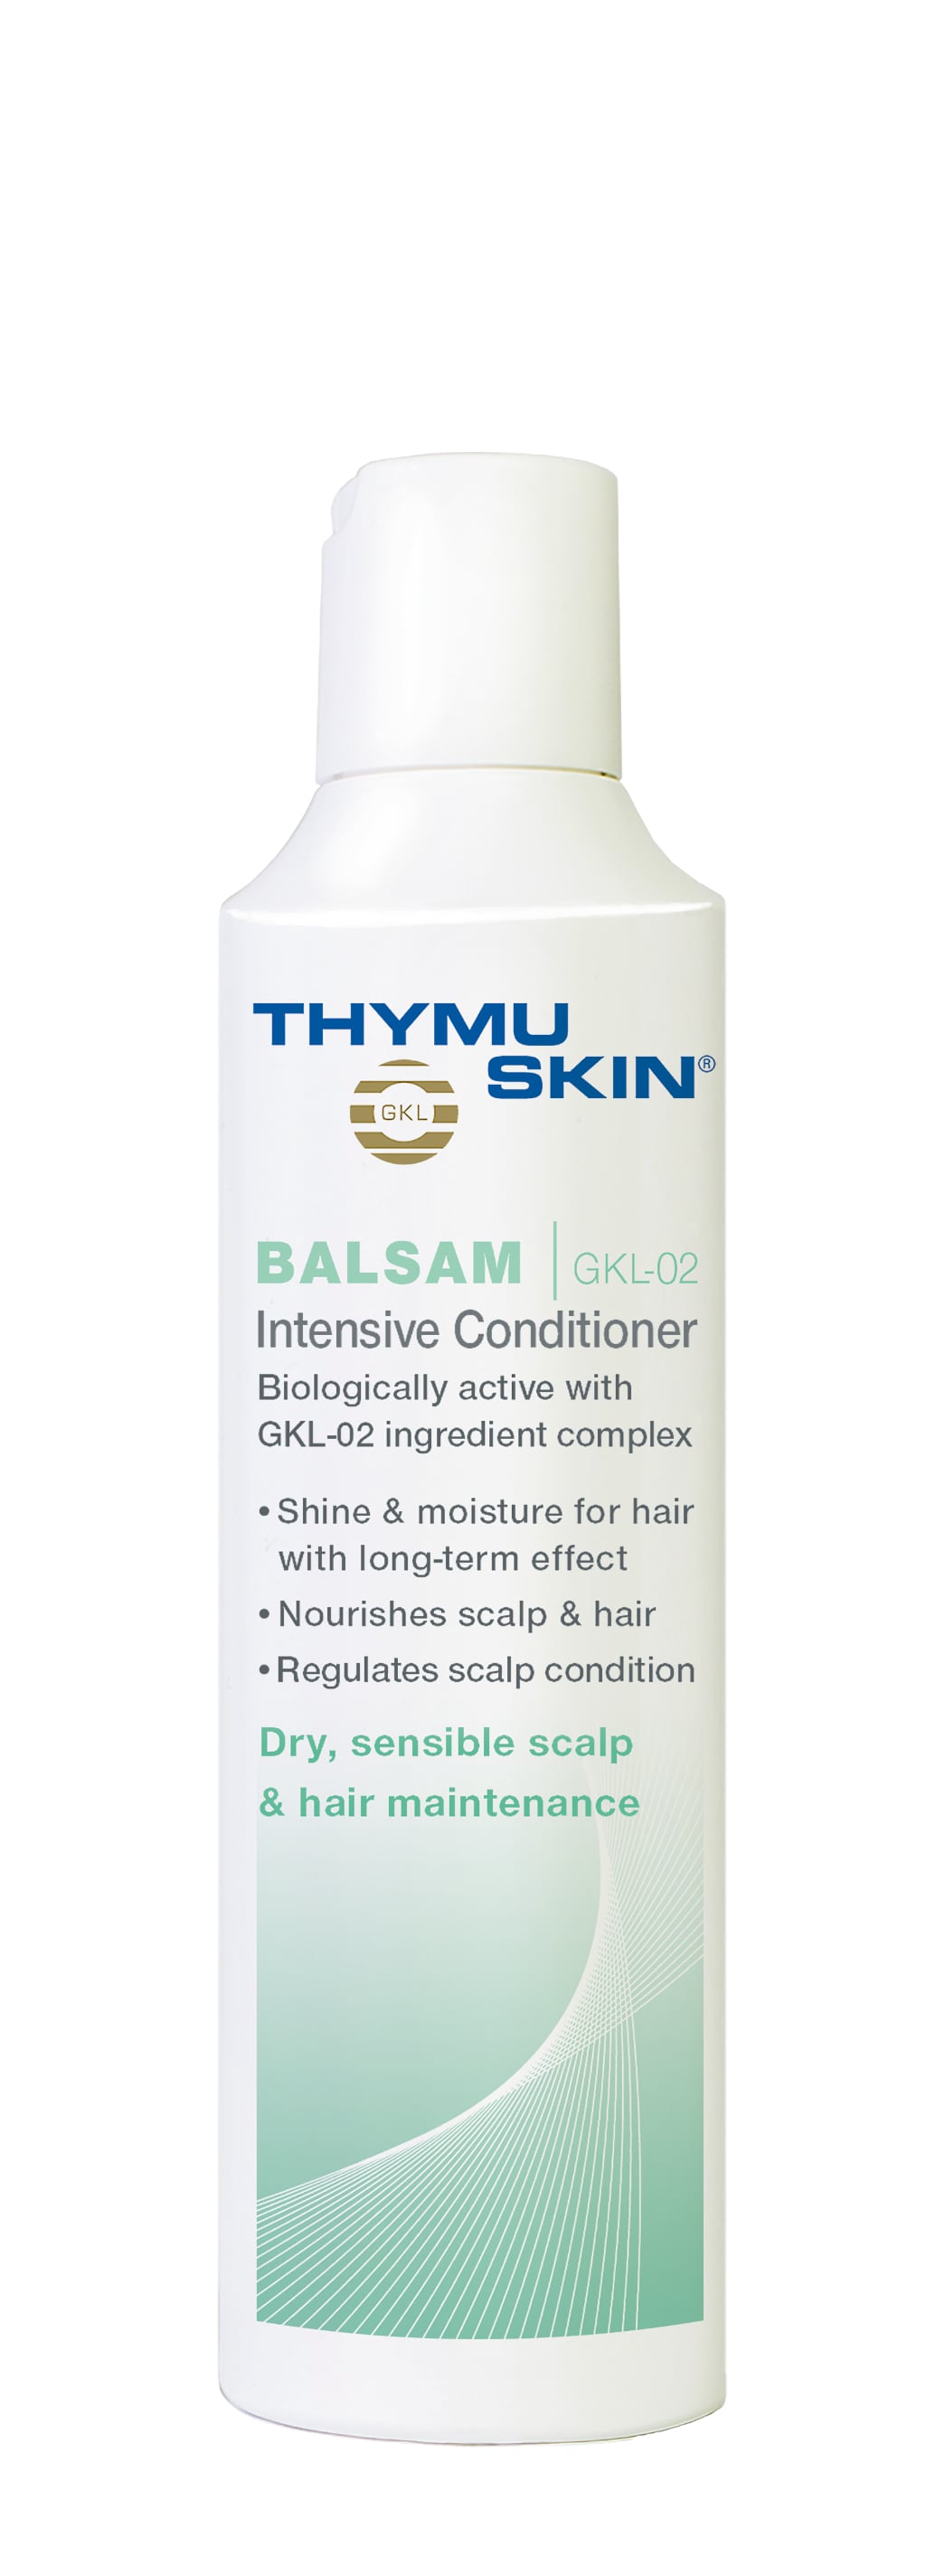 Thymuskin Balsam Intensive Conditioner